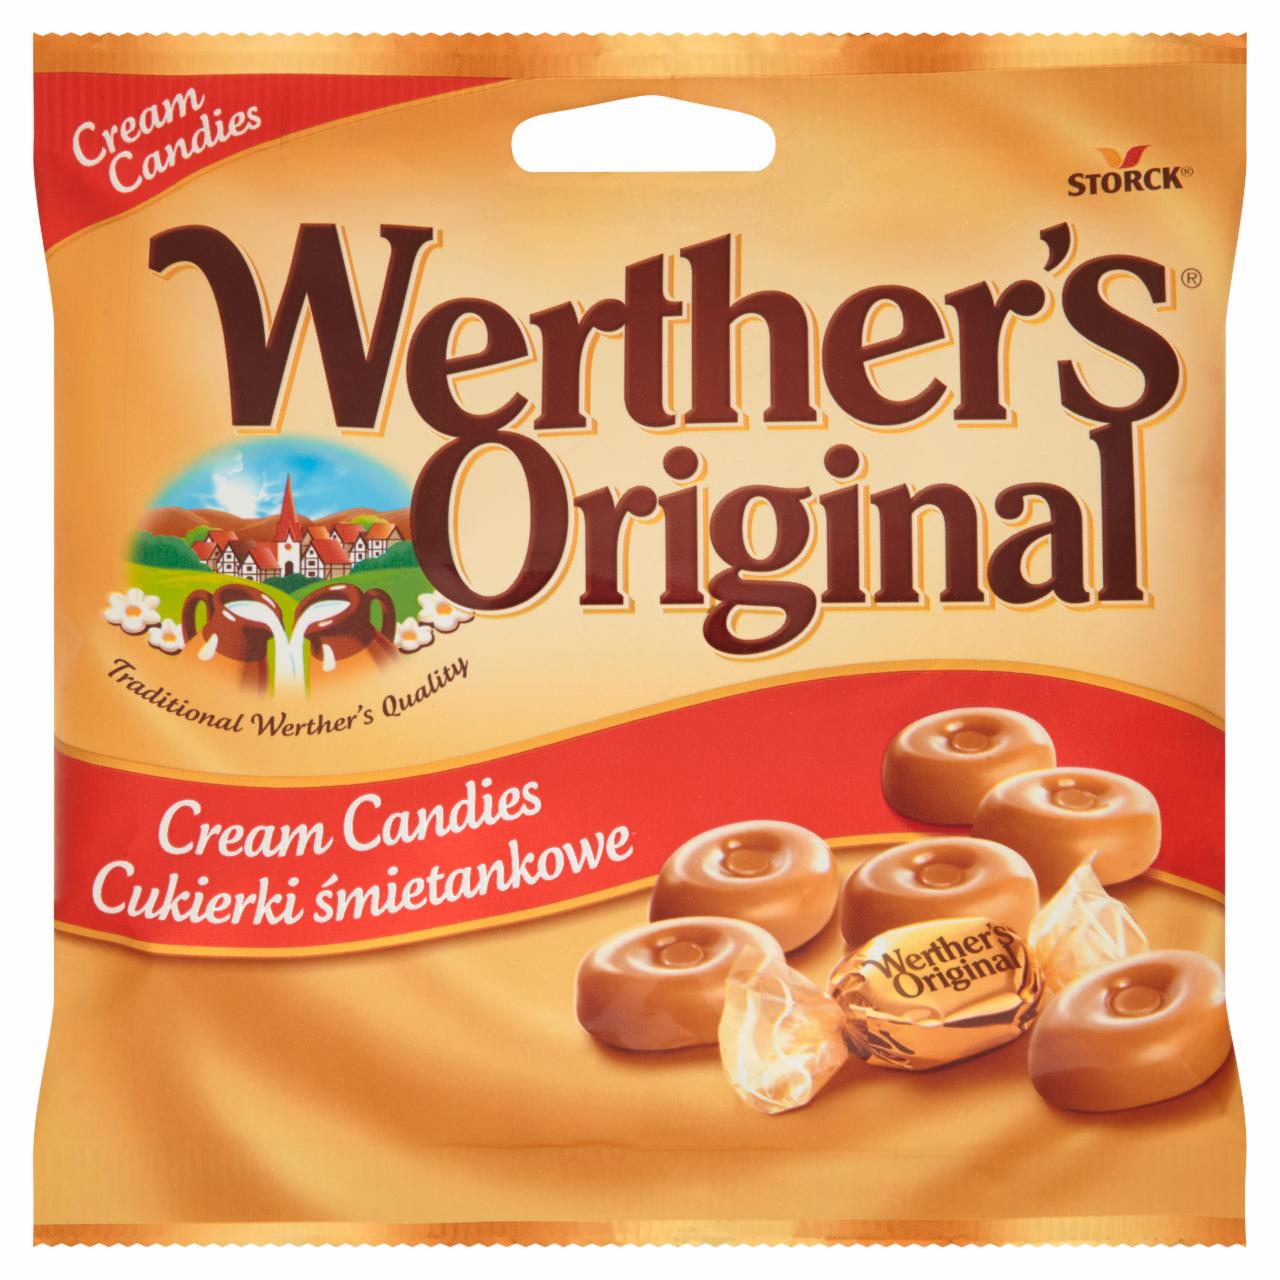 Zdjęcia - Werther's Original Cukierki śmietankowe 90 g